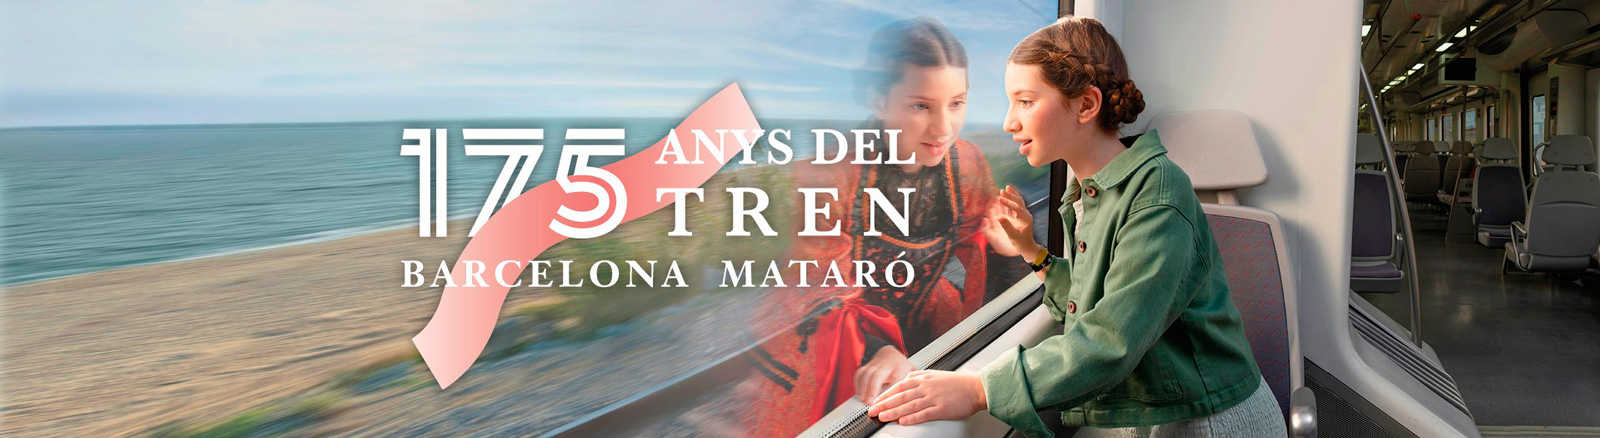 175 años del  tren Barcelona - Mataró